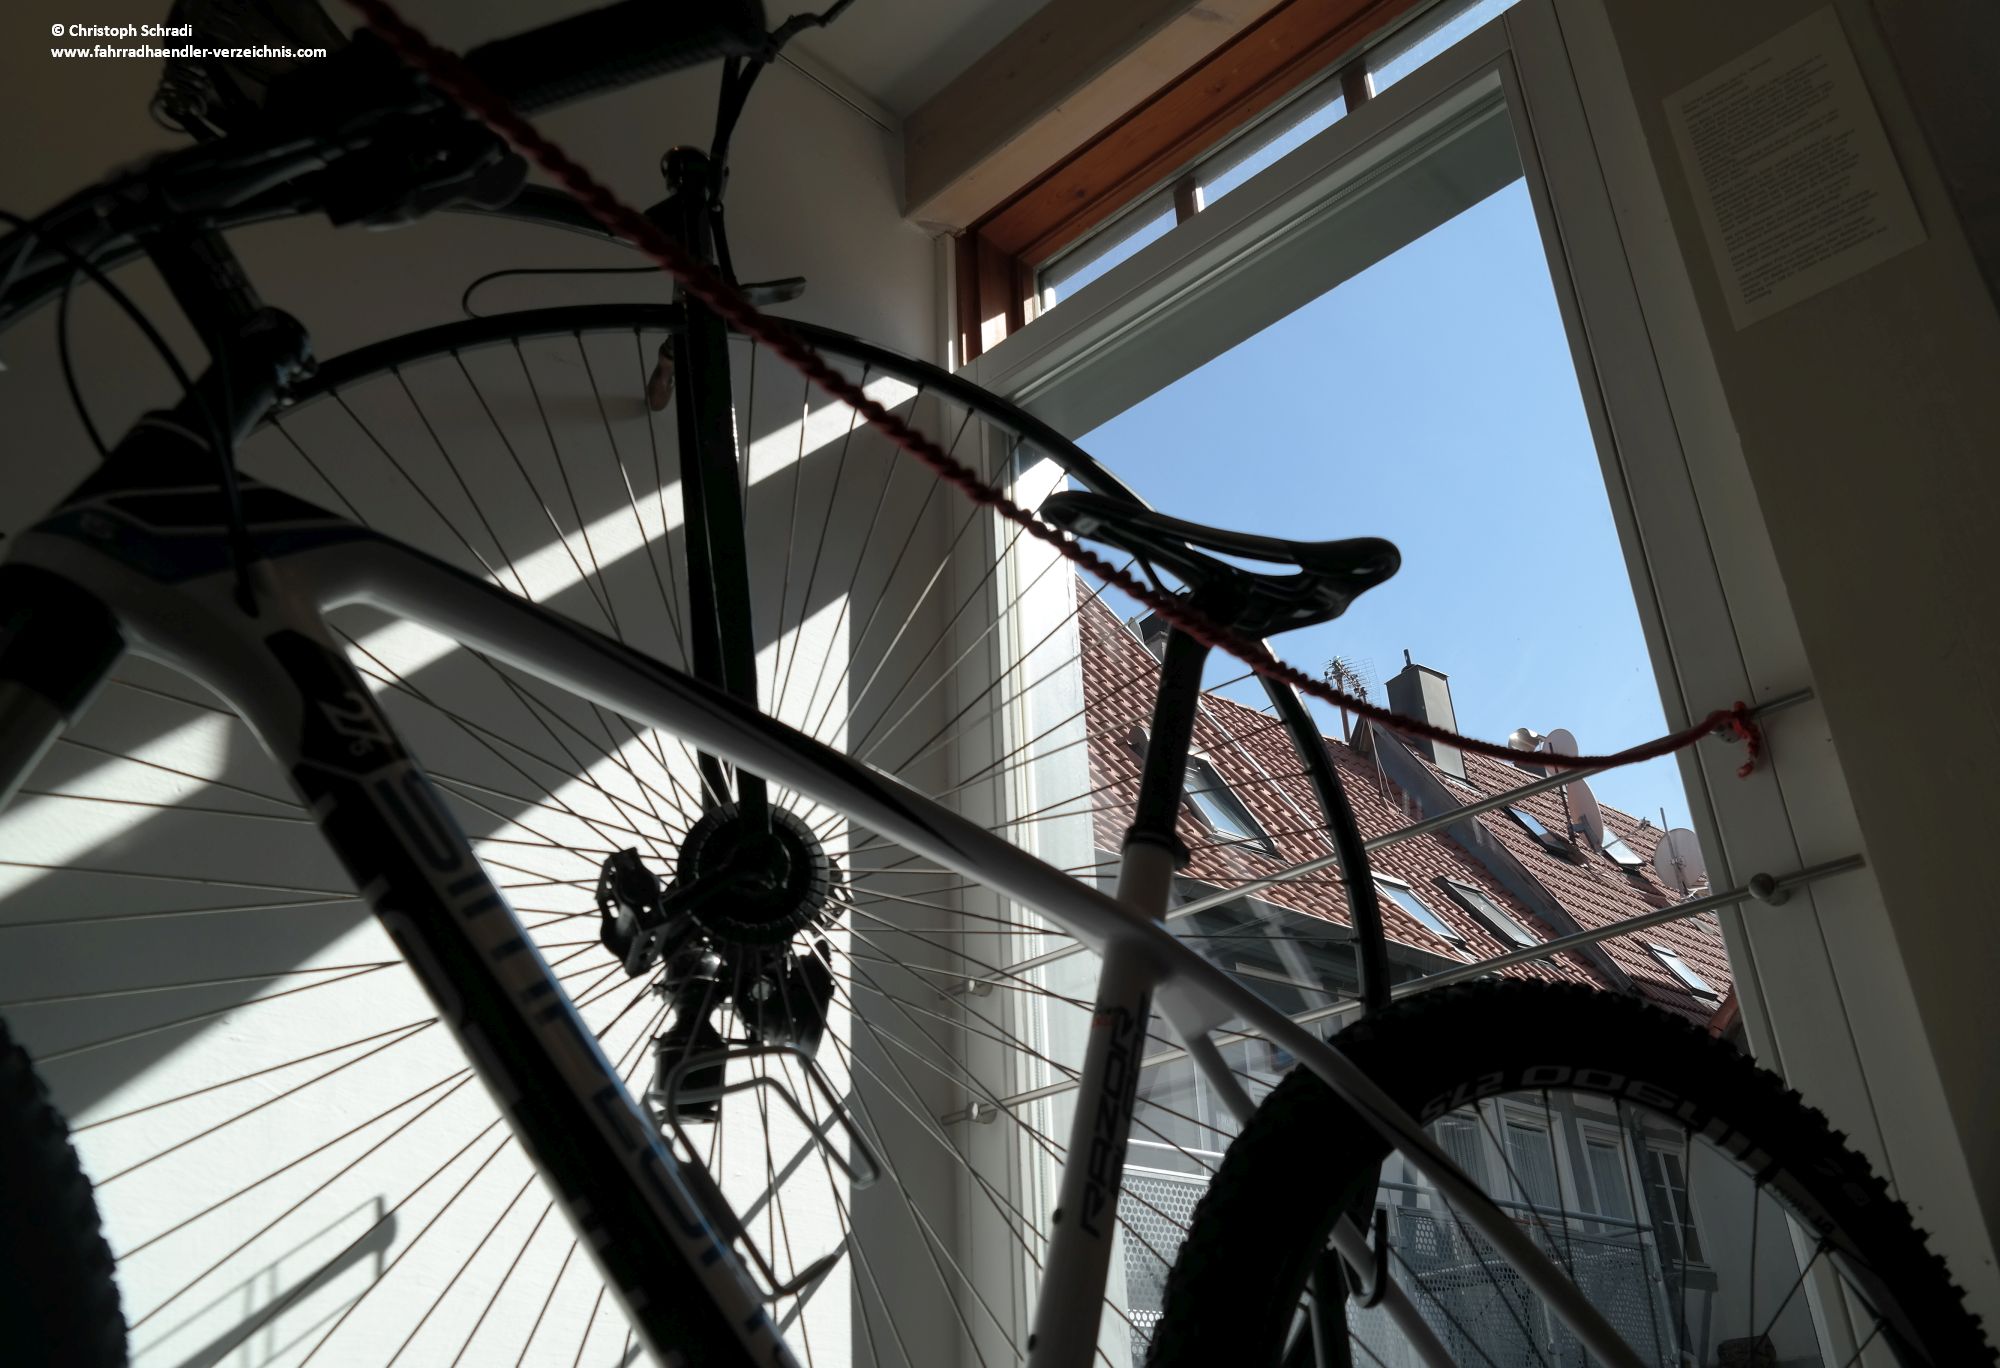 Ein Fahrrad und sein Vorfahre - das Carbonbike im Schatten des Hochrades